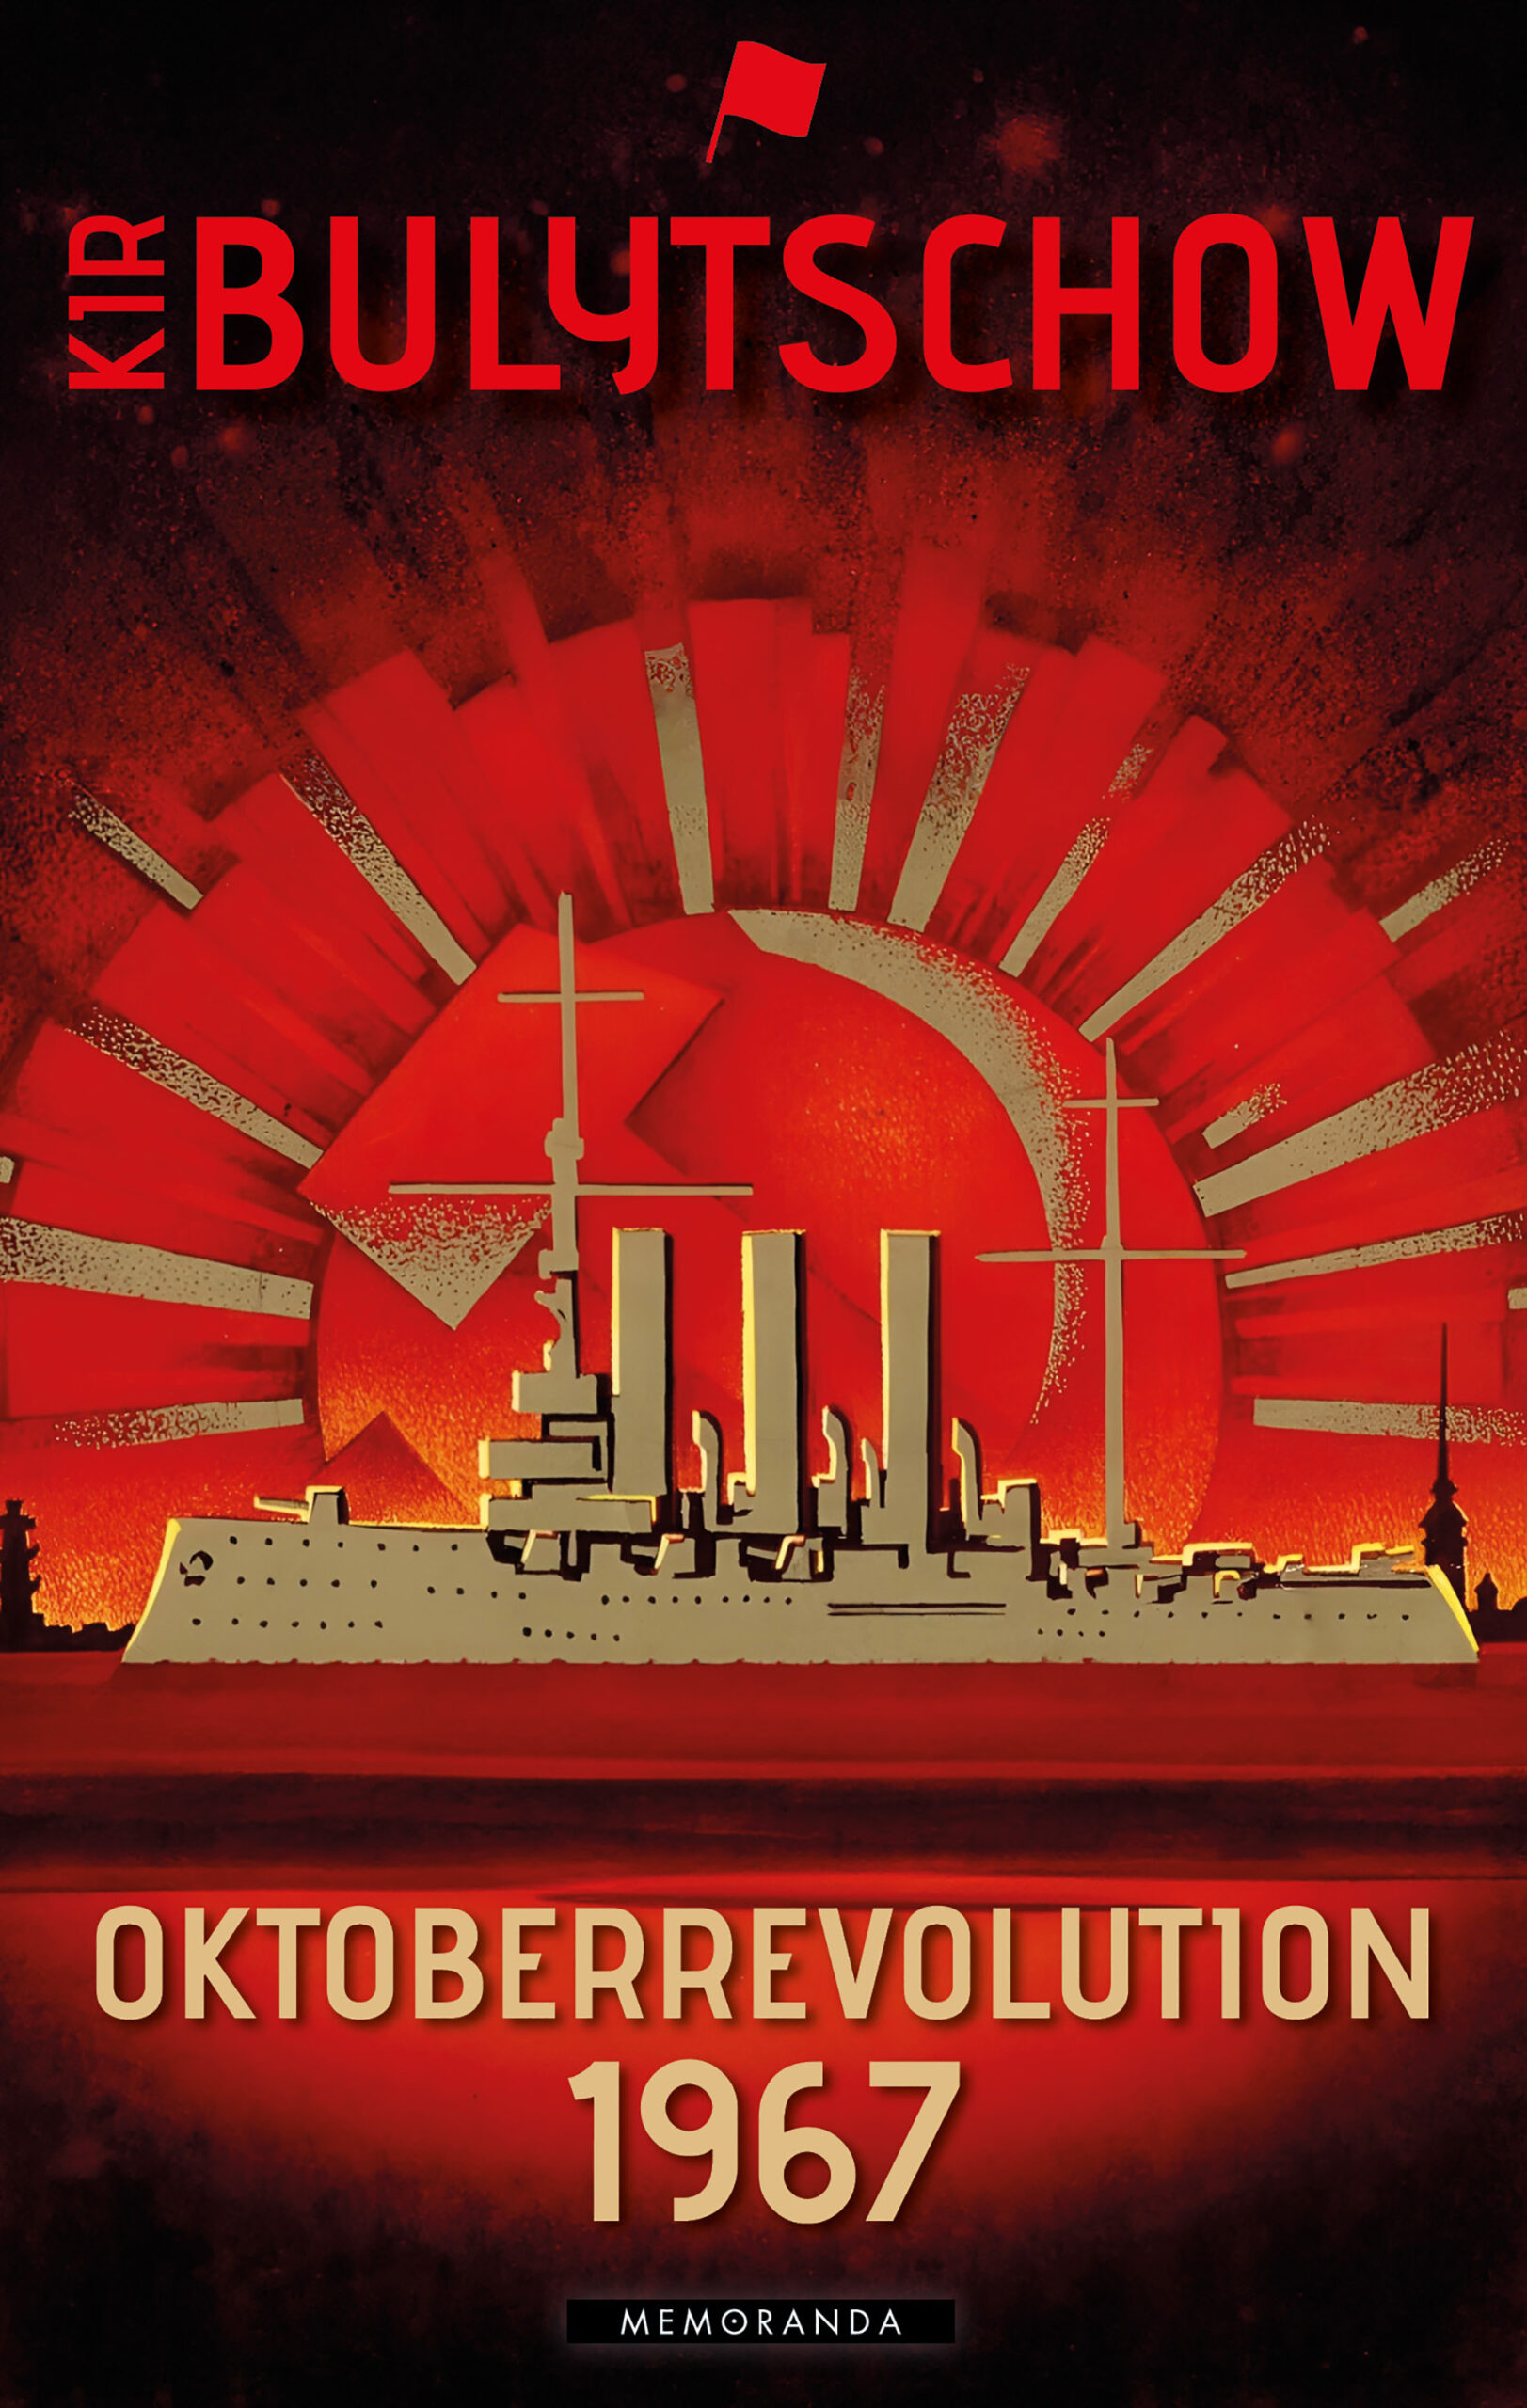 Umschlagbild von Kir Bulytschow: Oktoberrevolution 1967 (Panzerkreuzer AURORA vor Strahlenkkranz))